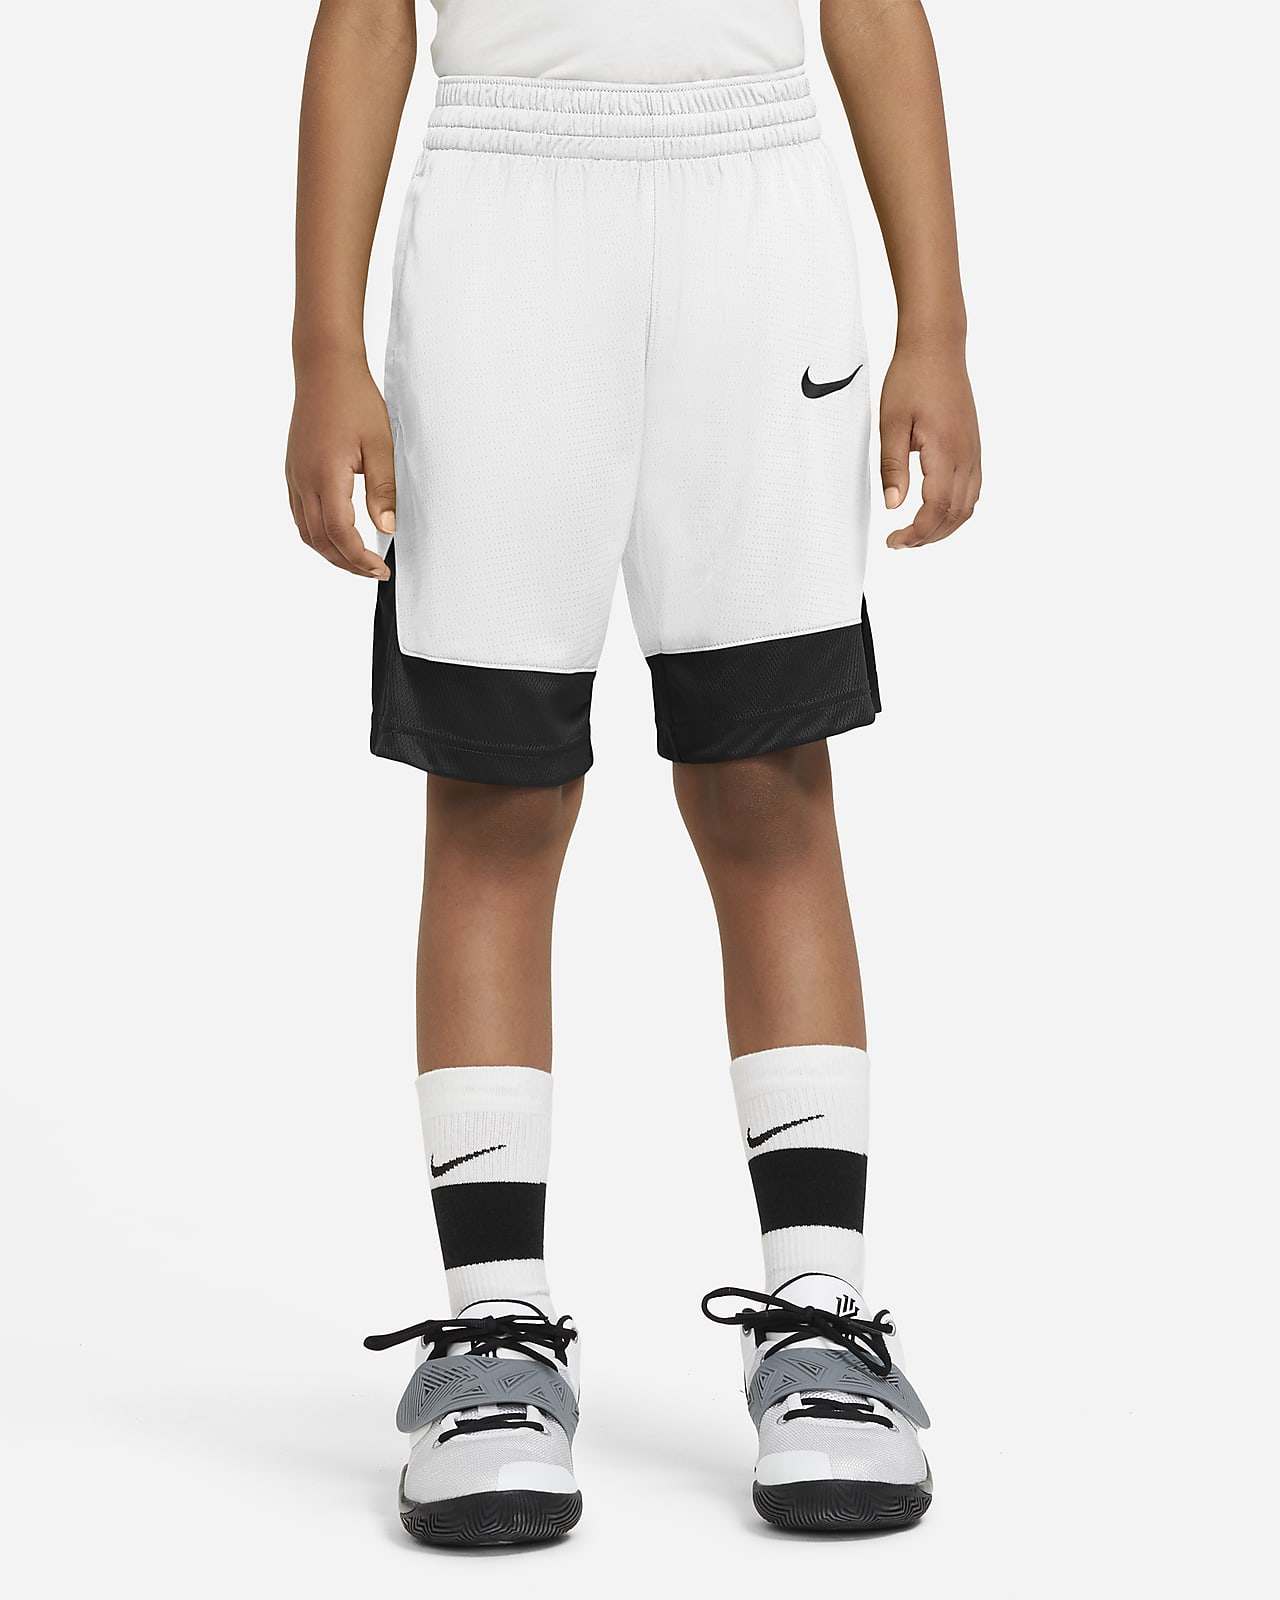 nike youth basketball shorts